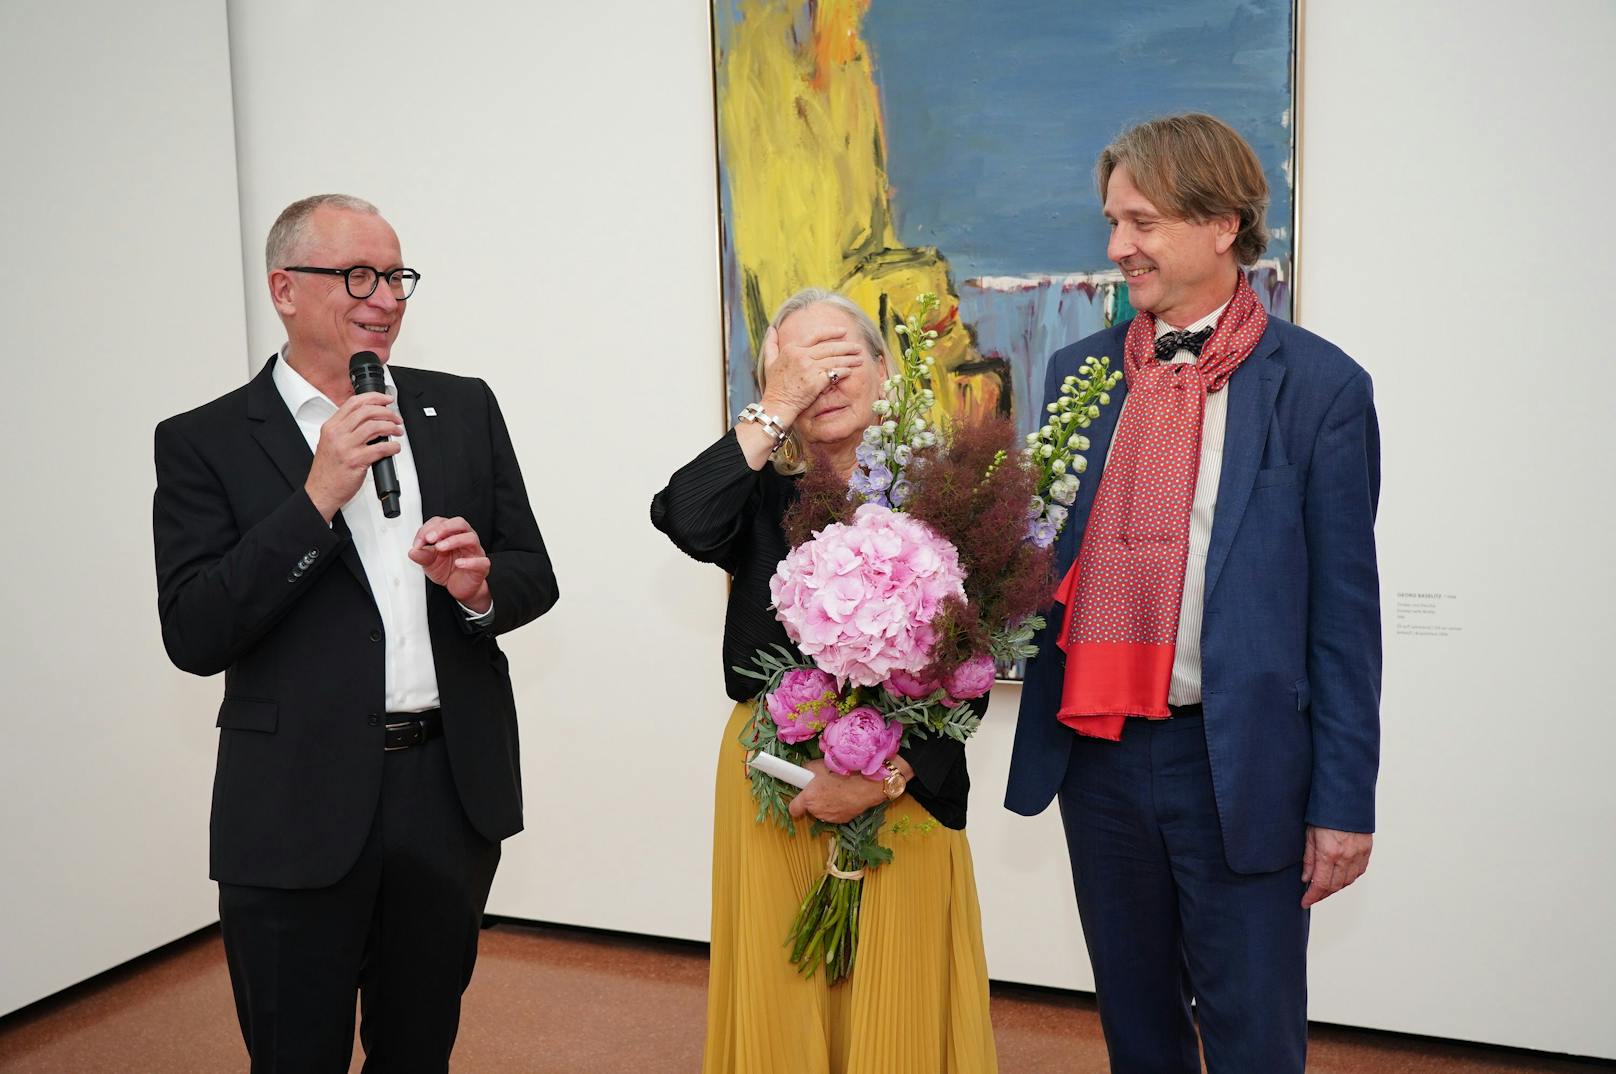 Museumsdirektorin Agnes Husslein-Arco wurde mit Blumen nachträglich zu ihrem Geburtstag überrascht